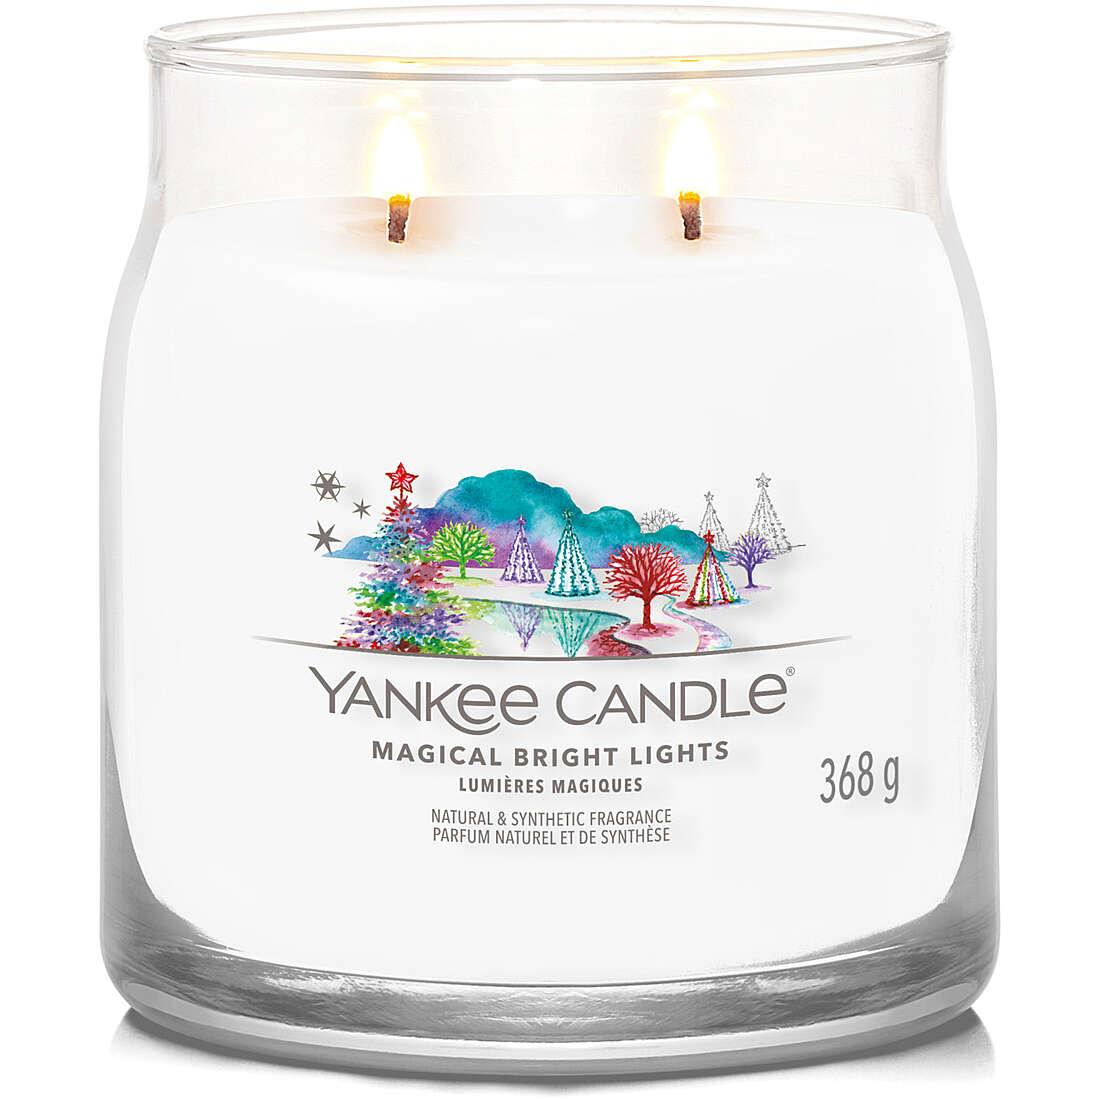 Signature di Yankee Candle Giara Media Magical Bright Lights 1743368E